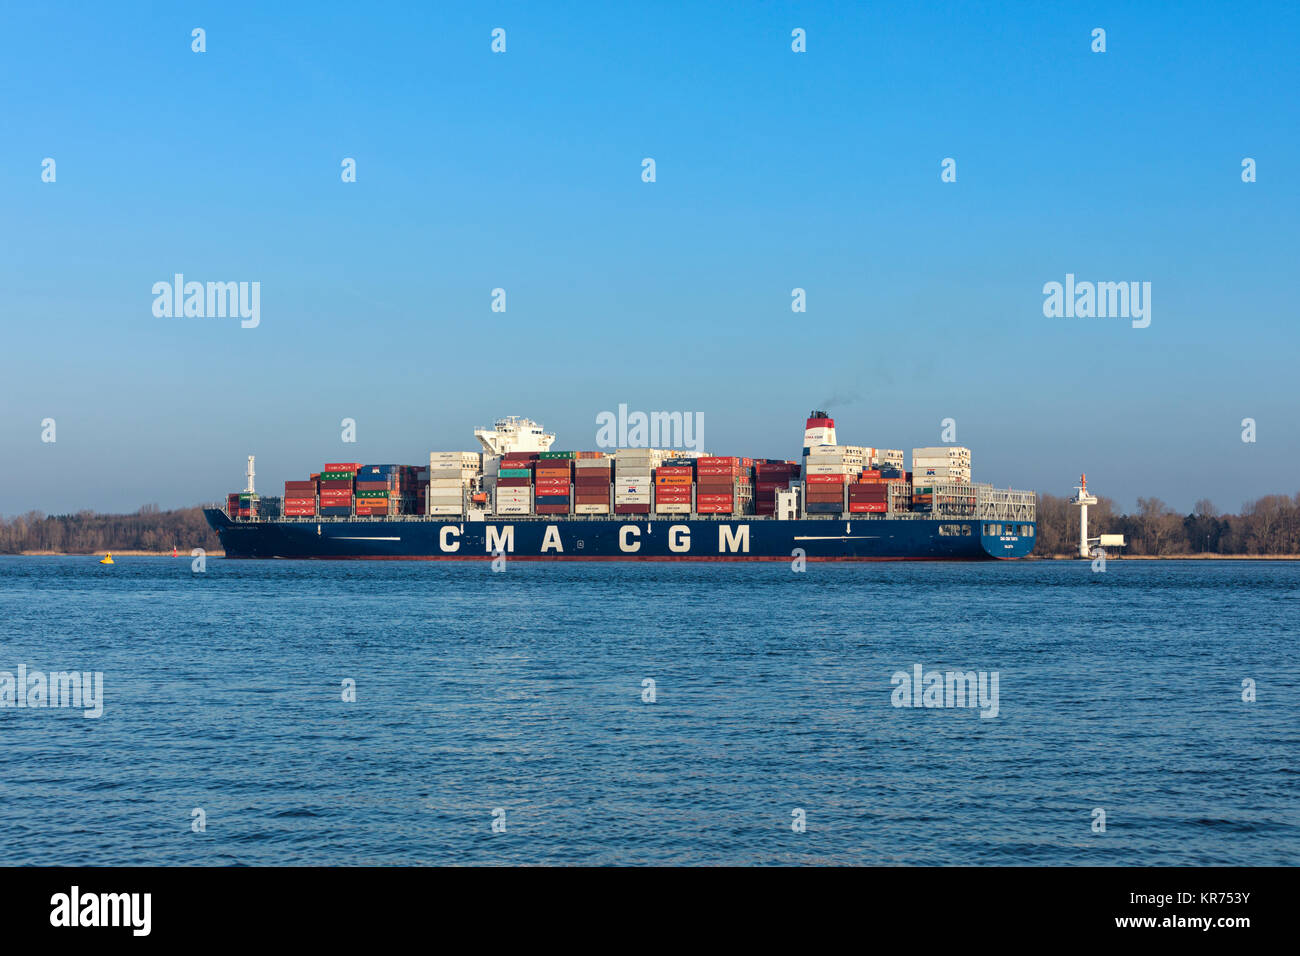 Stade, Deutschland - Dezember 118, 2015: Containerschiff CMA CGM TANYA auf der Elbe. Das Schiff kann bis zu 9.300 Standardcontainer halten und ist im Besitz und o Stockfoto